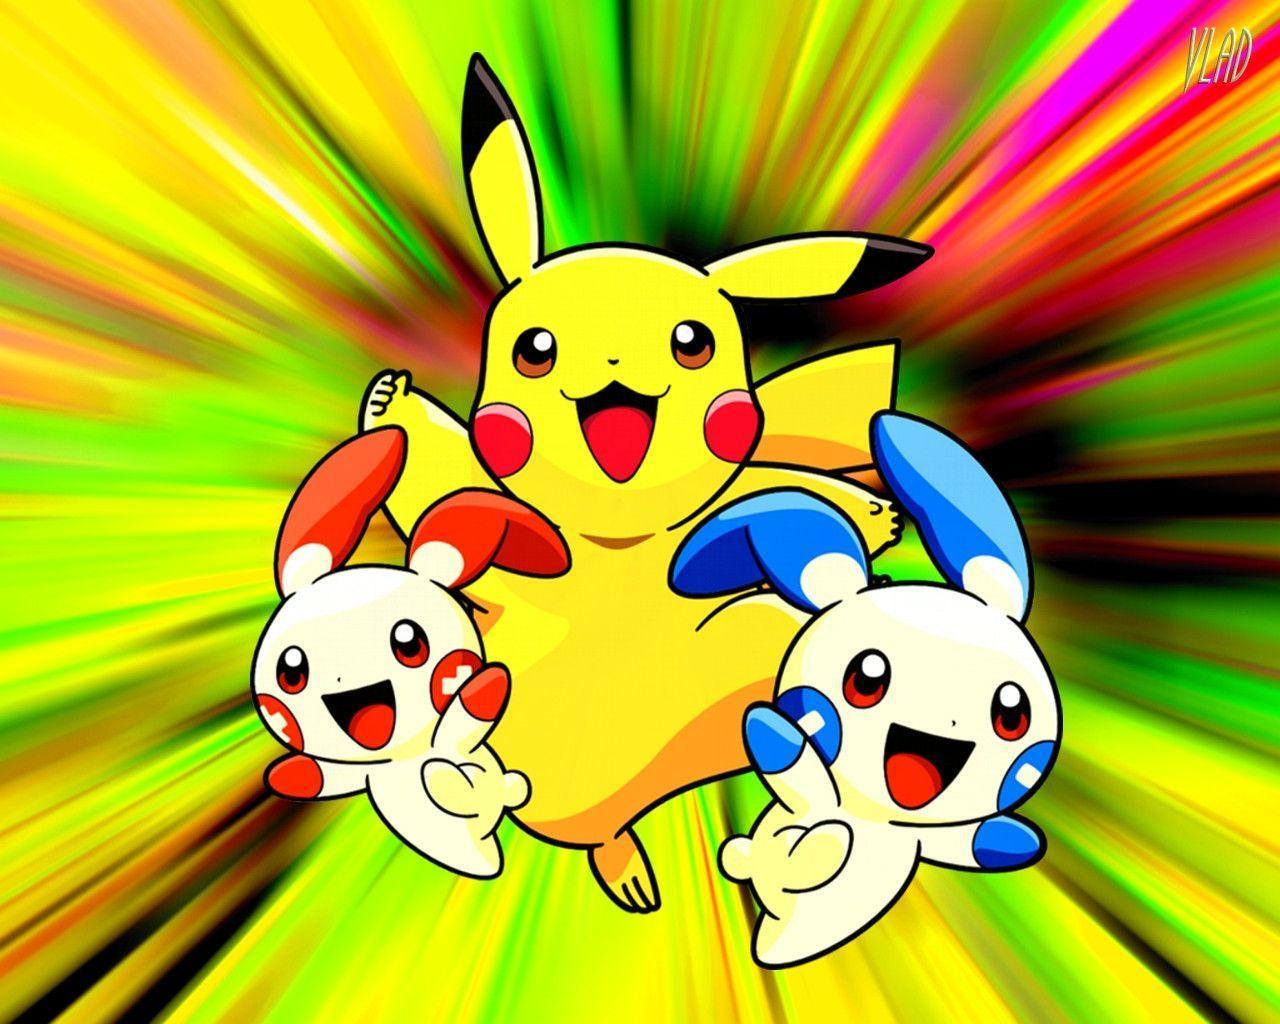 Imagem de pikachu melhores amigos para sempre #131105854